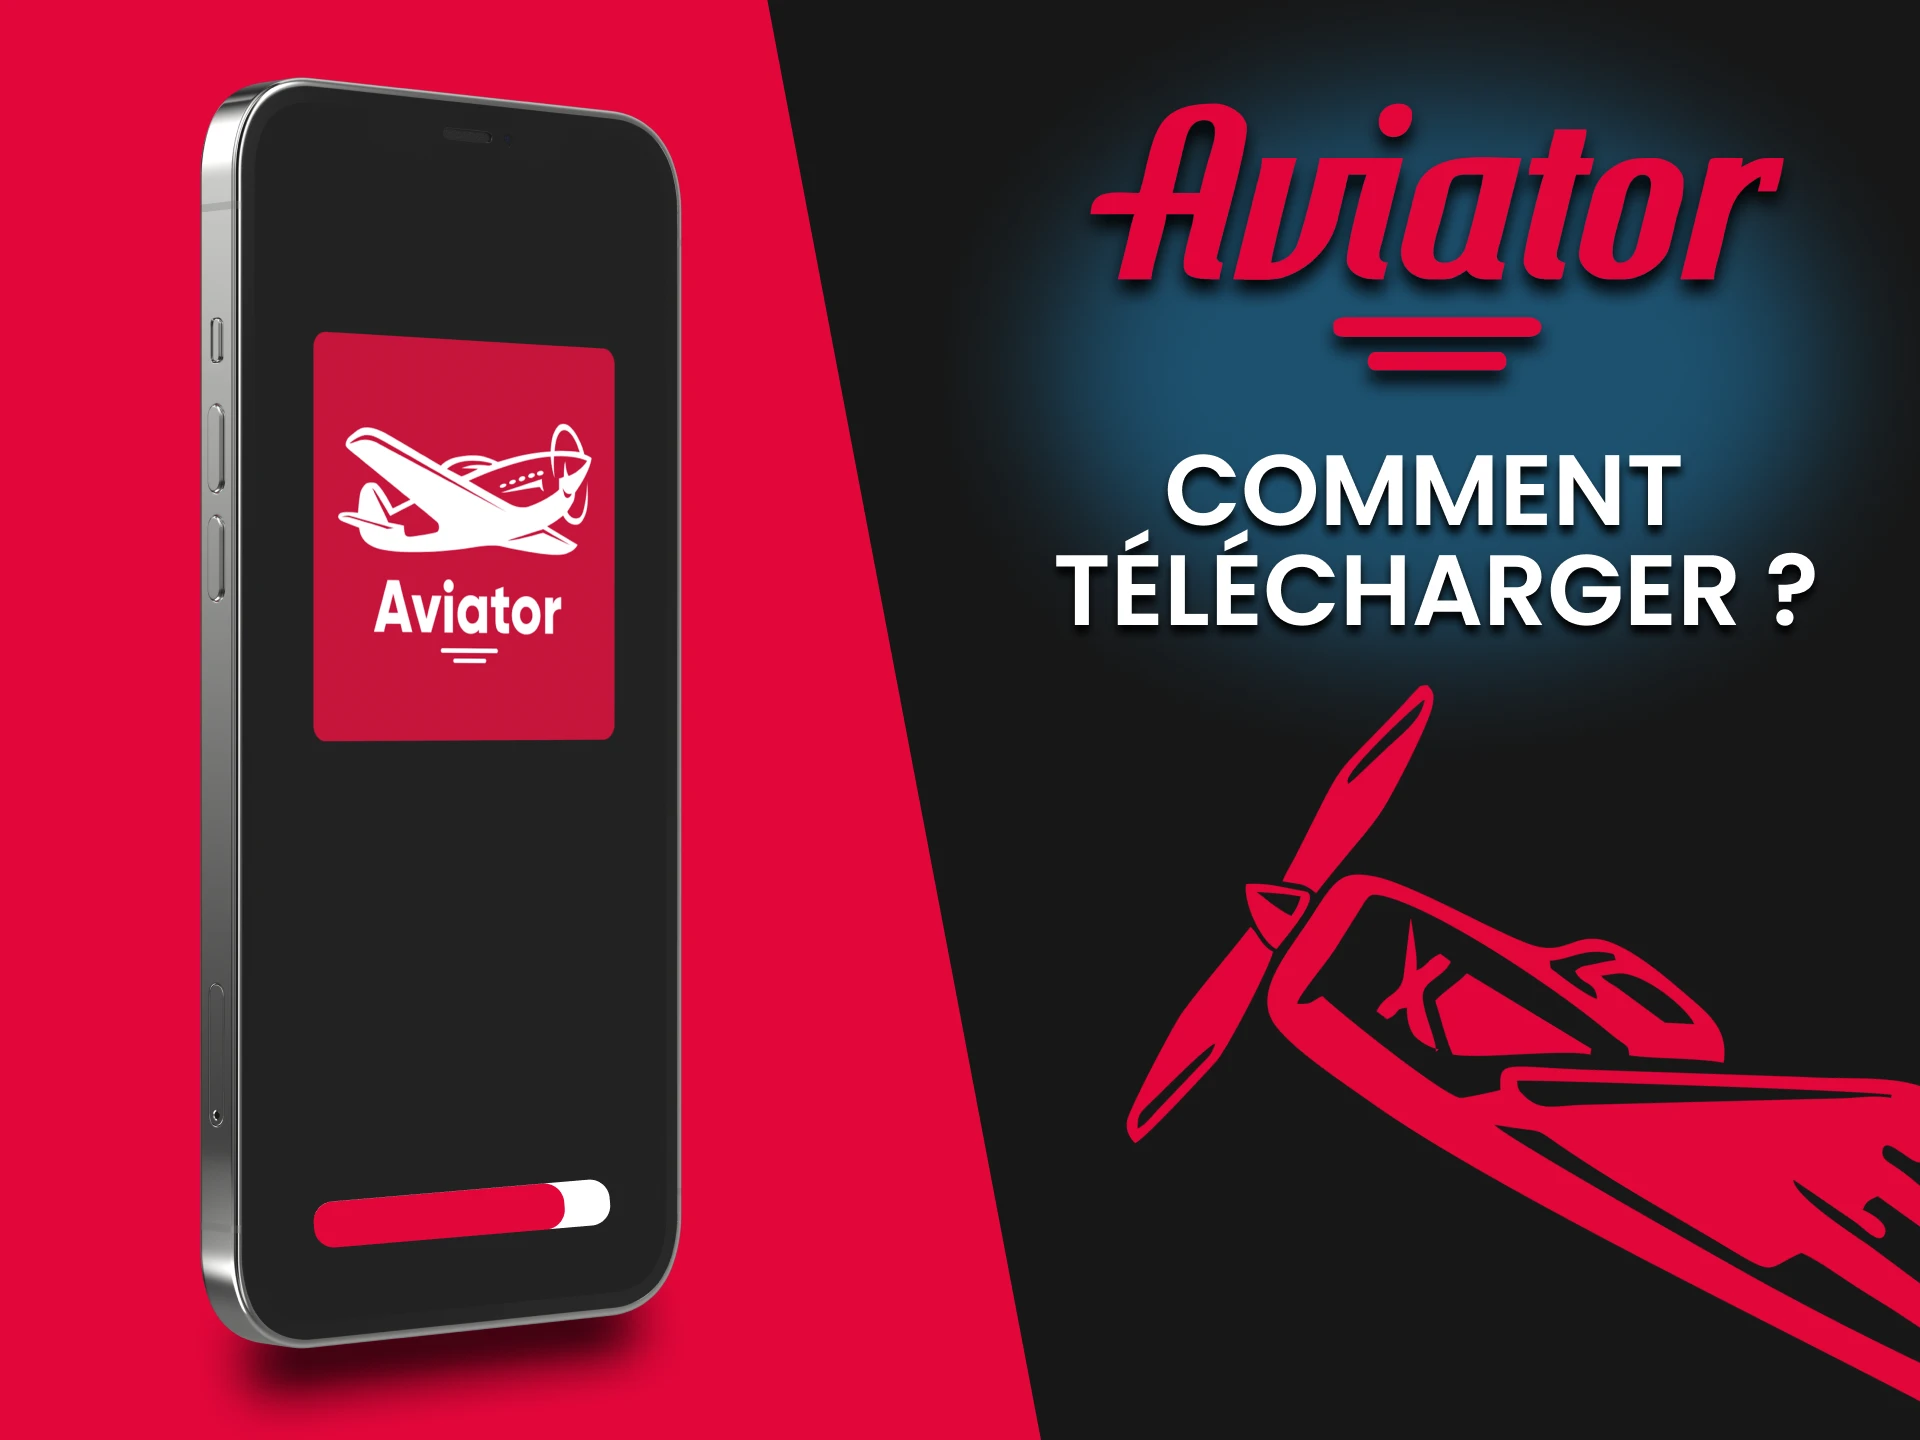 Découvrez comment télécharger l'application Aviator sur votre téléphone.